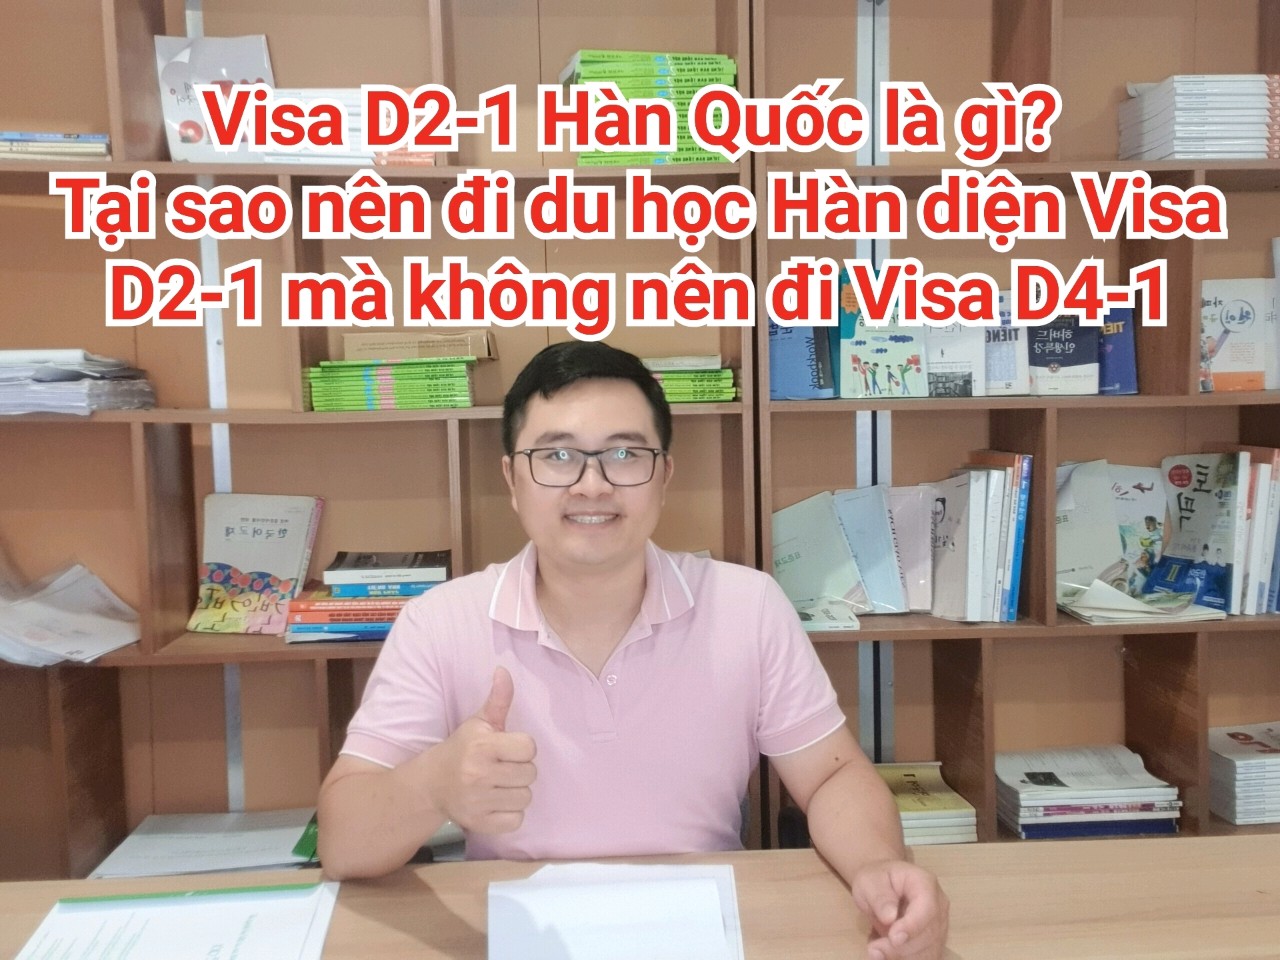 Cần chuẩn bị những gì để đăng ký và được cấp visa D2-1?